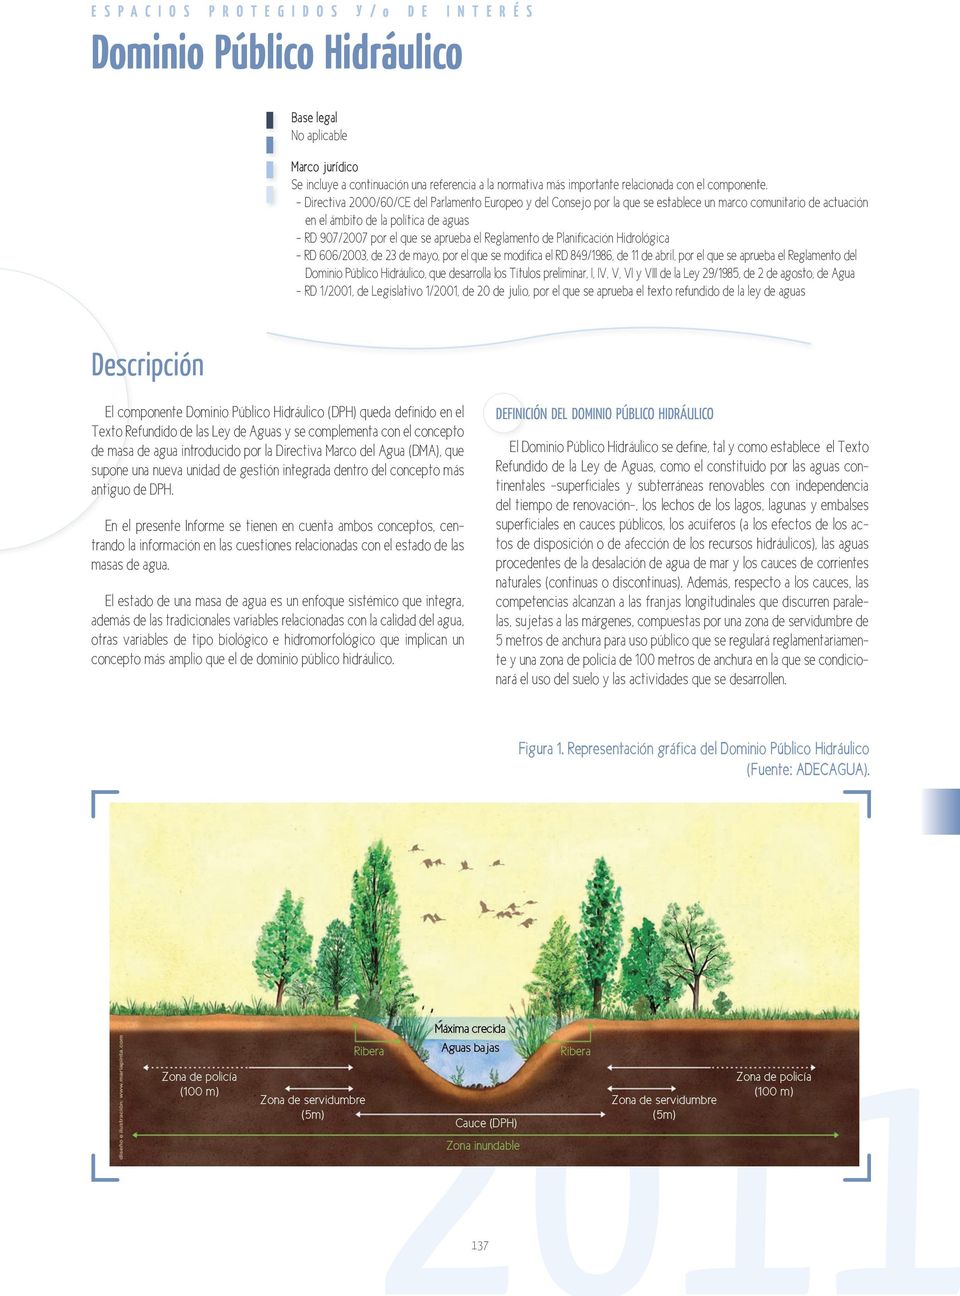 - Directiva 2000/60/CE del Parlamento Europeo y del Consejo por la que se establece un marco comunitario de actuación en el ámbito de la política de aguas - RD 907/2007 por el que se aprueba el